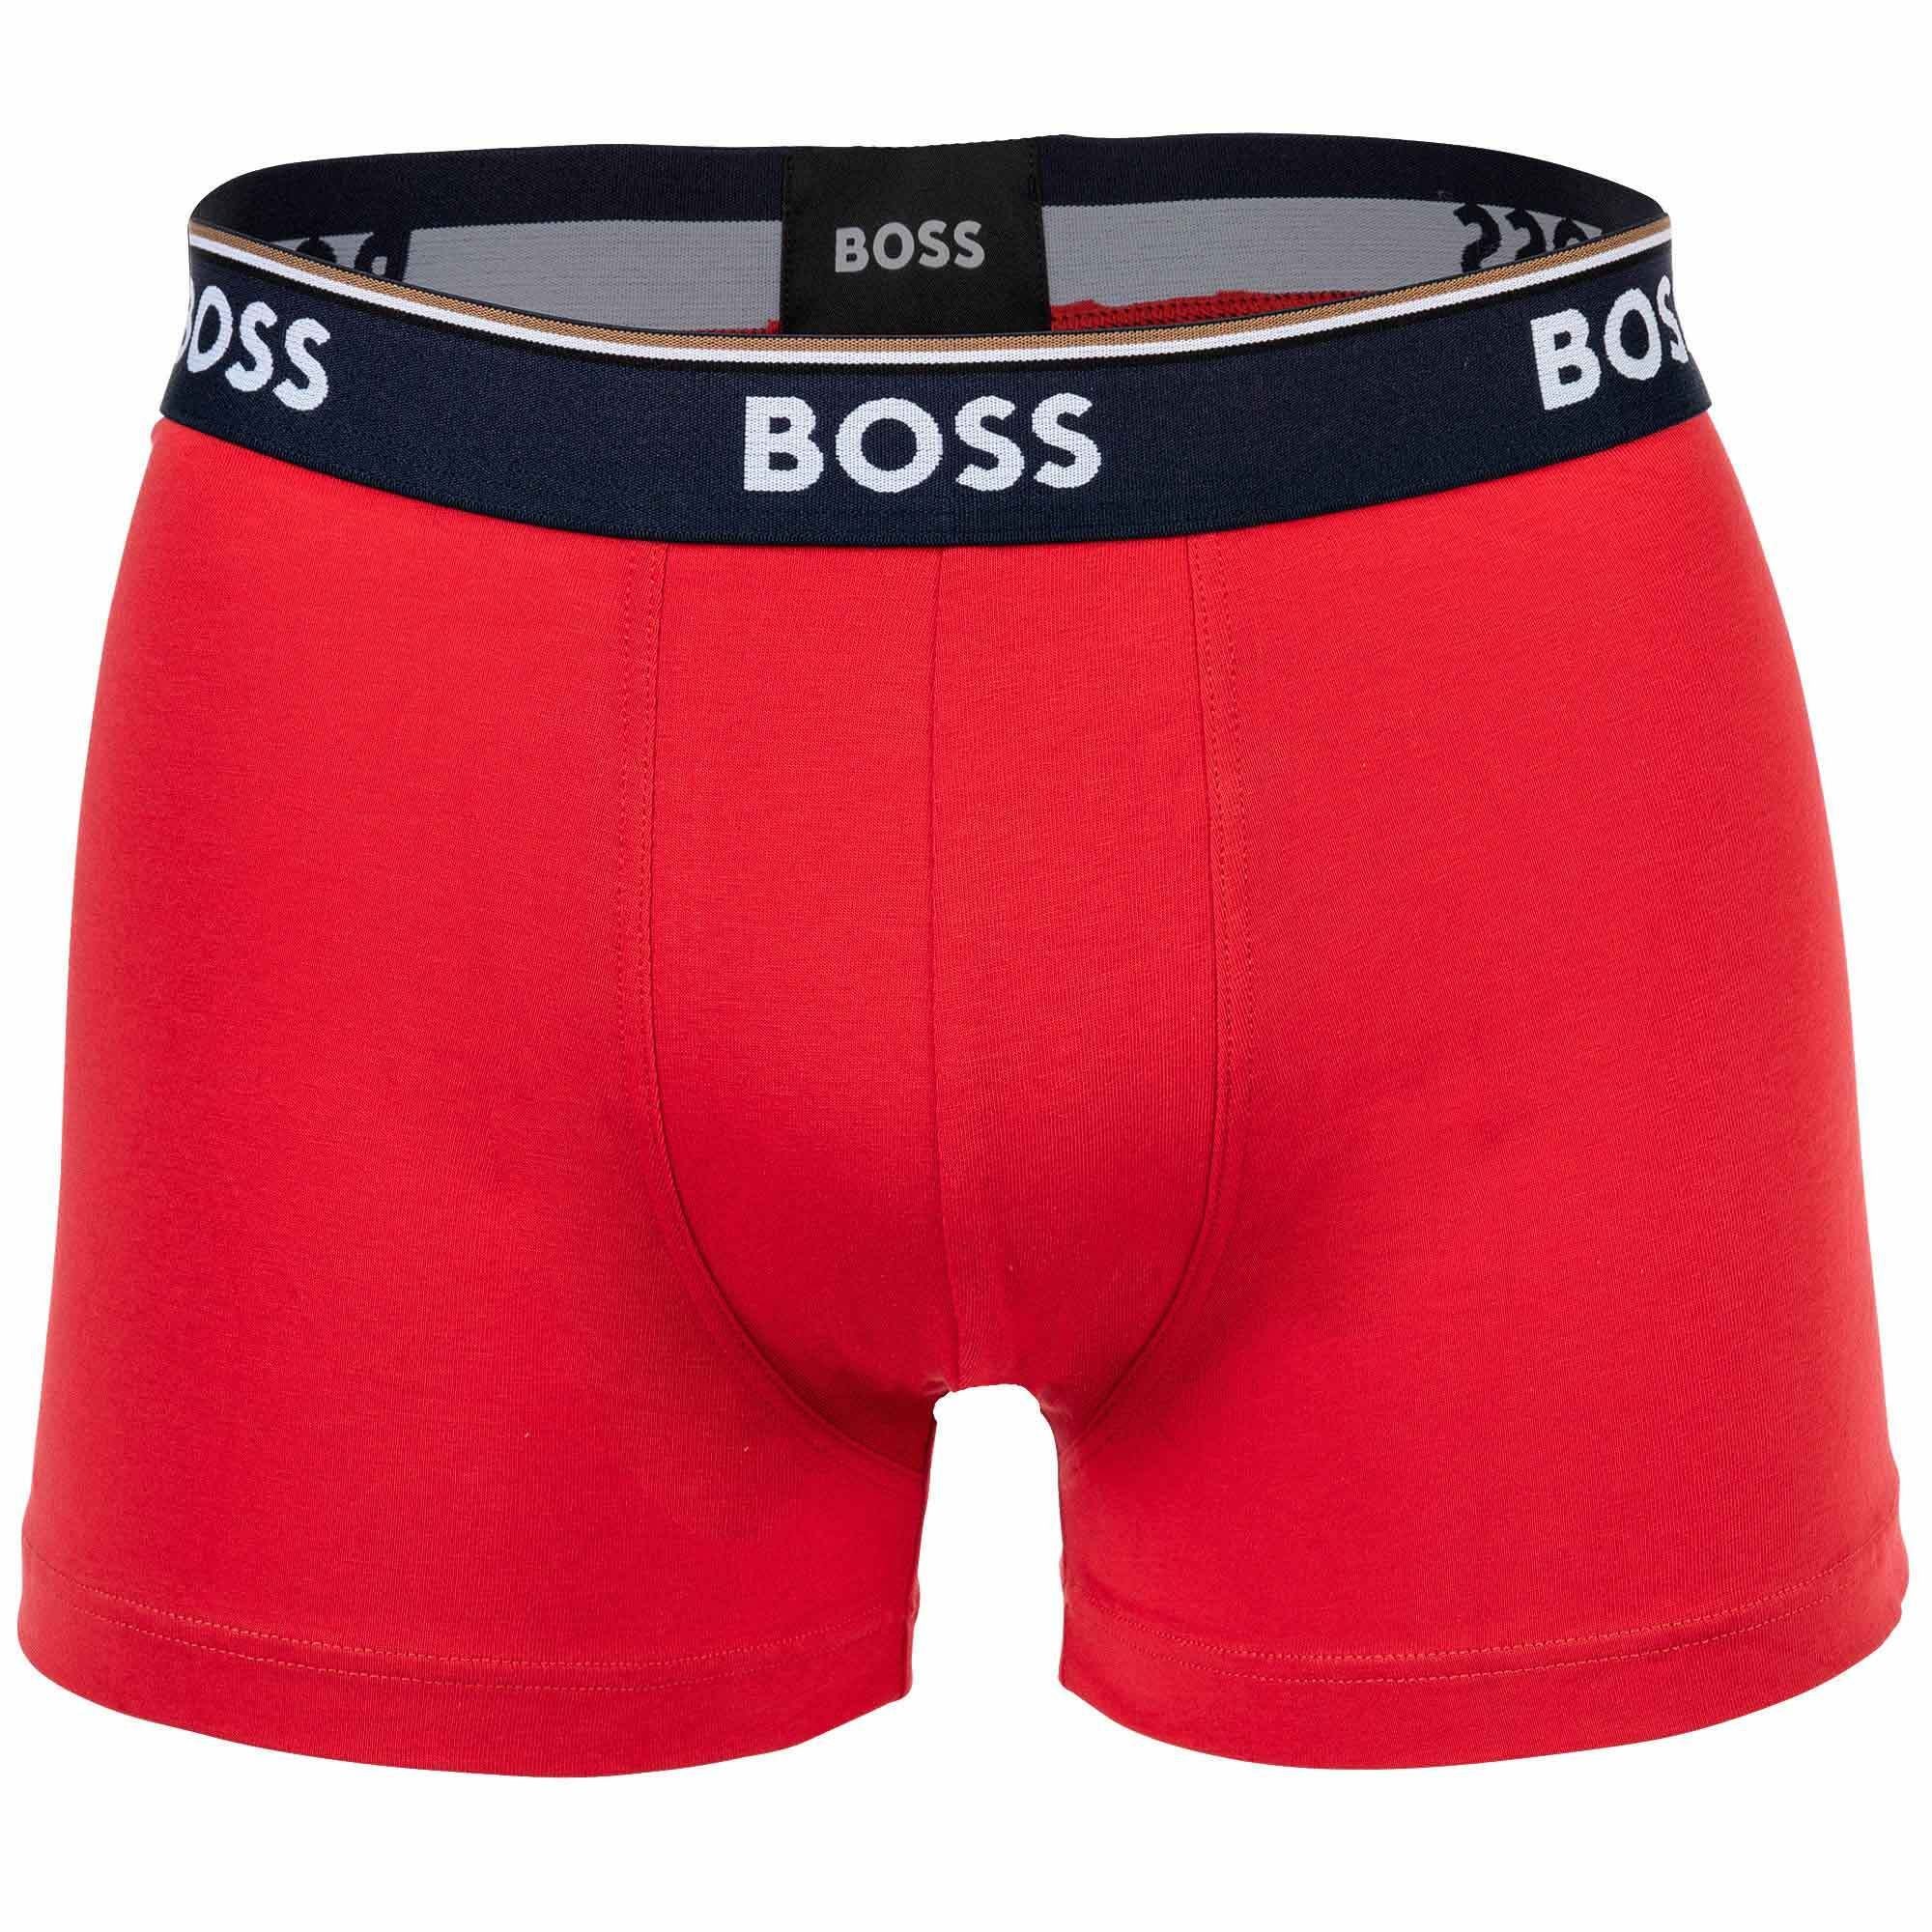 BOSS Boxer Herren Power, Rot/Dunkelblau/Olive 3er Pack - Trunks, Unterwäsche